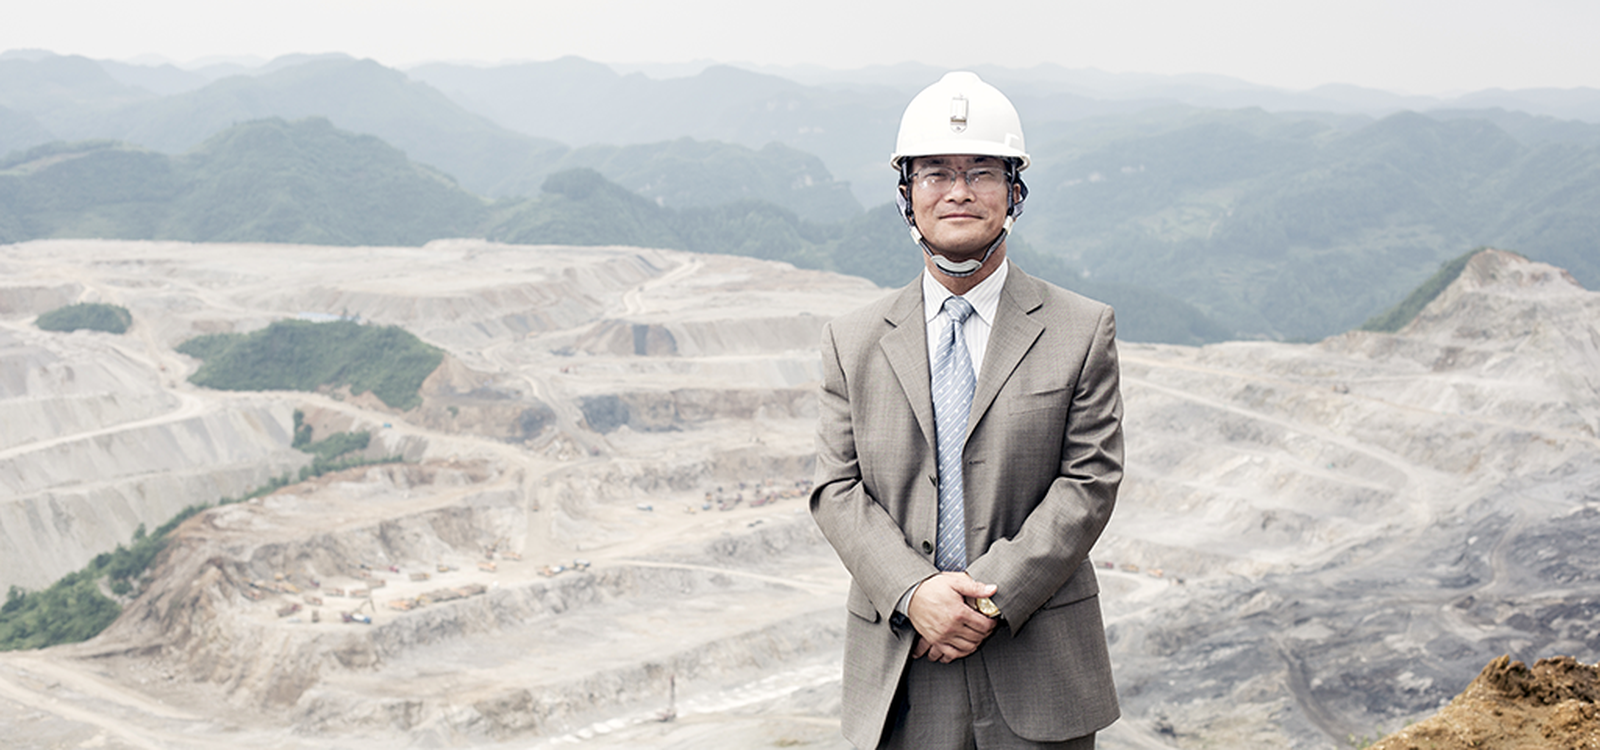 <p>贵州新澳钻孔技术工程有限公司总裁罗庆新先生深知山特维克设备为磷矿开采带来的价值。</p>
